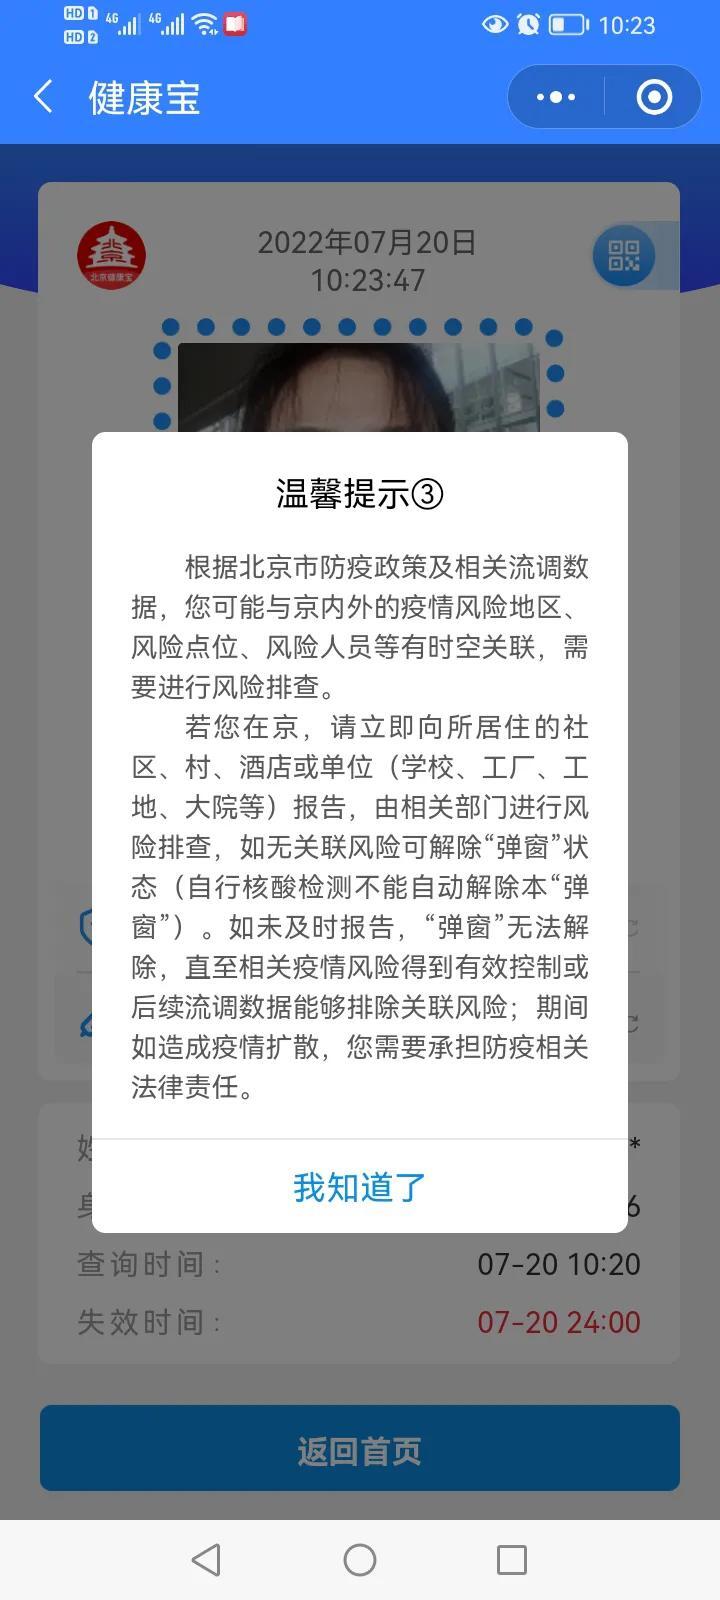 北京健康宝弹窗规则有变是怎么回事，关于北京健康宝弹窗问题的新消息。